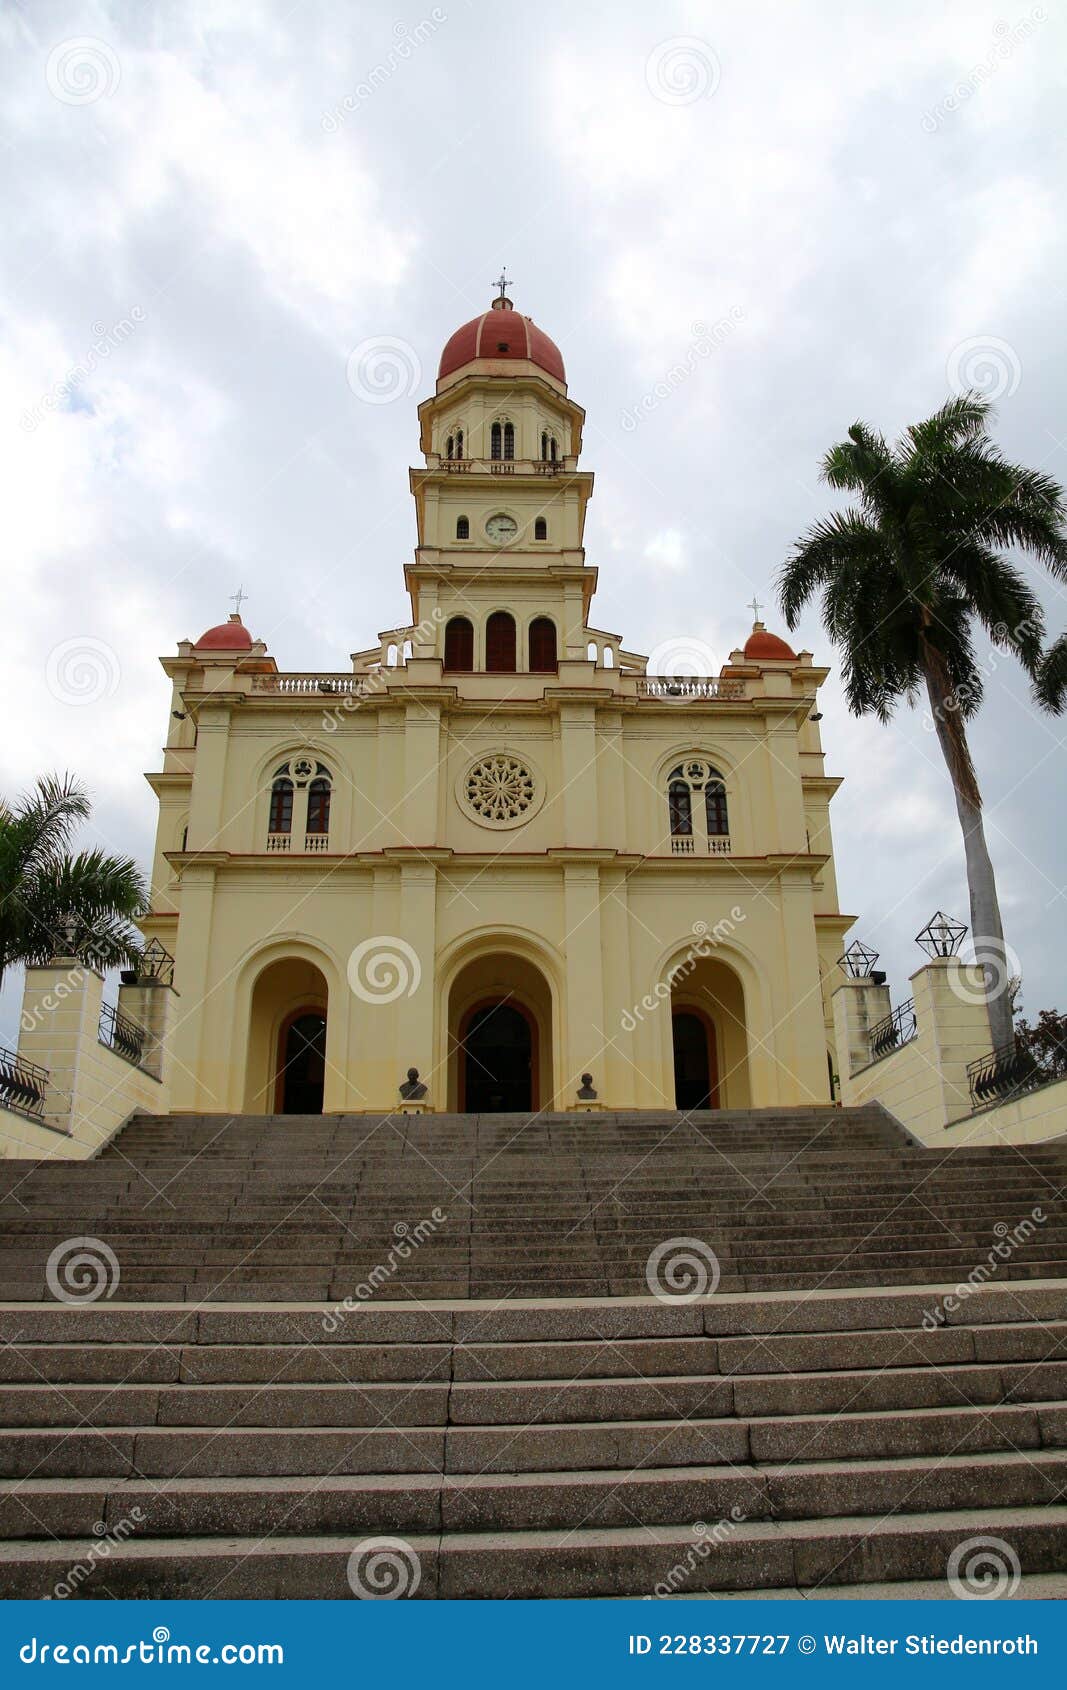 pilgrimage church of el cobre, santiago de cuba, cuba